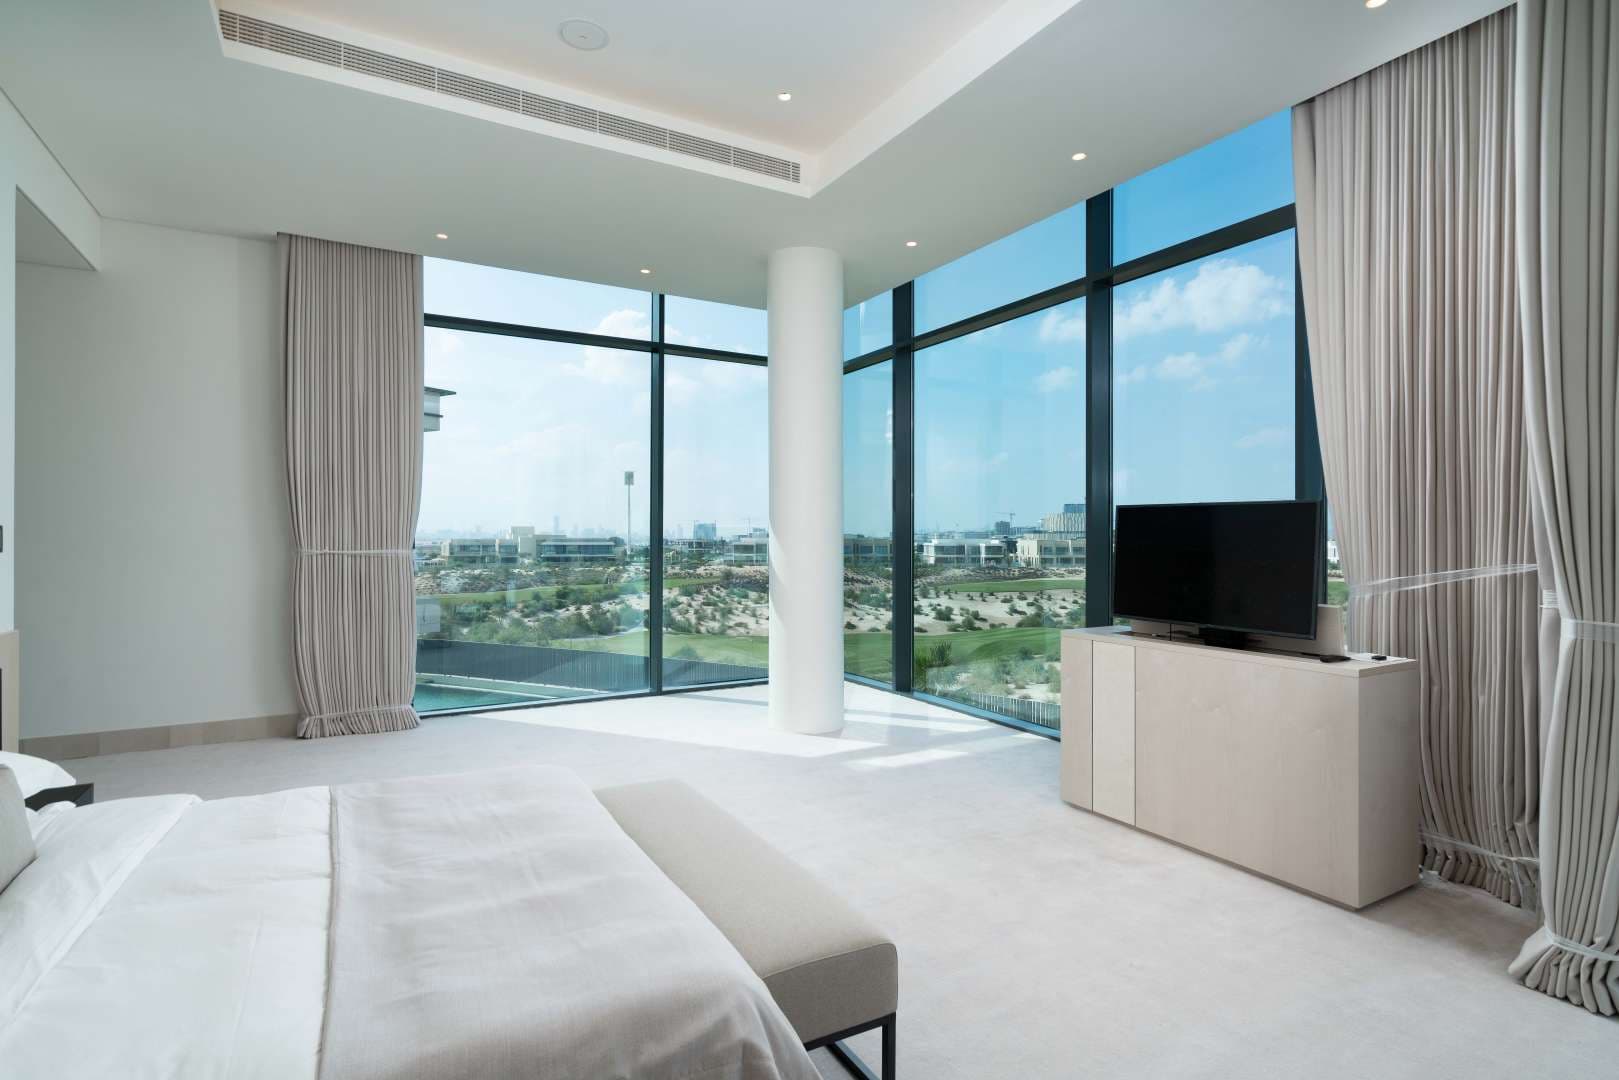 9 Bedroom Villa For Sale Dubai Hills View Lp05164 187563a75c599c00.jpg